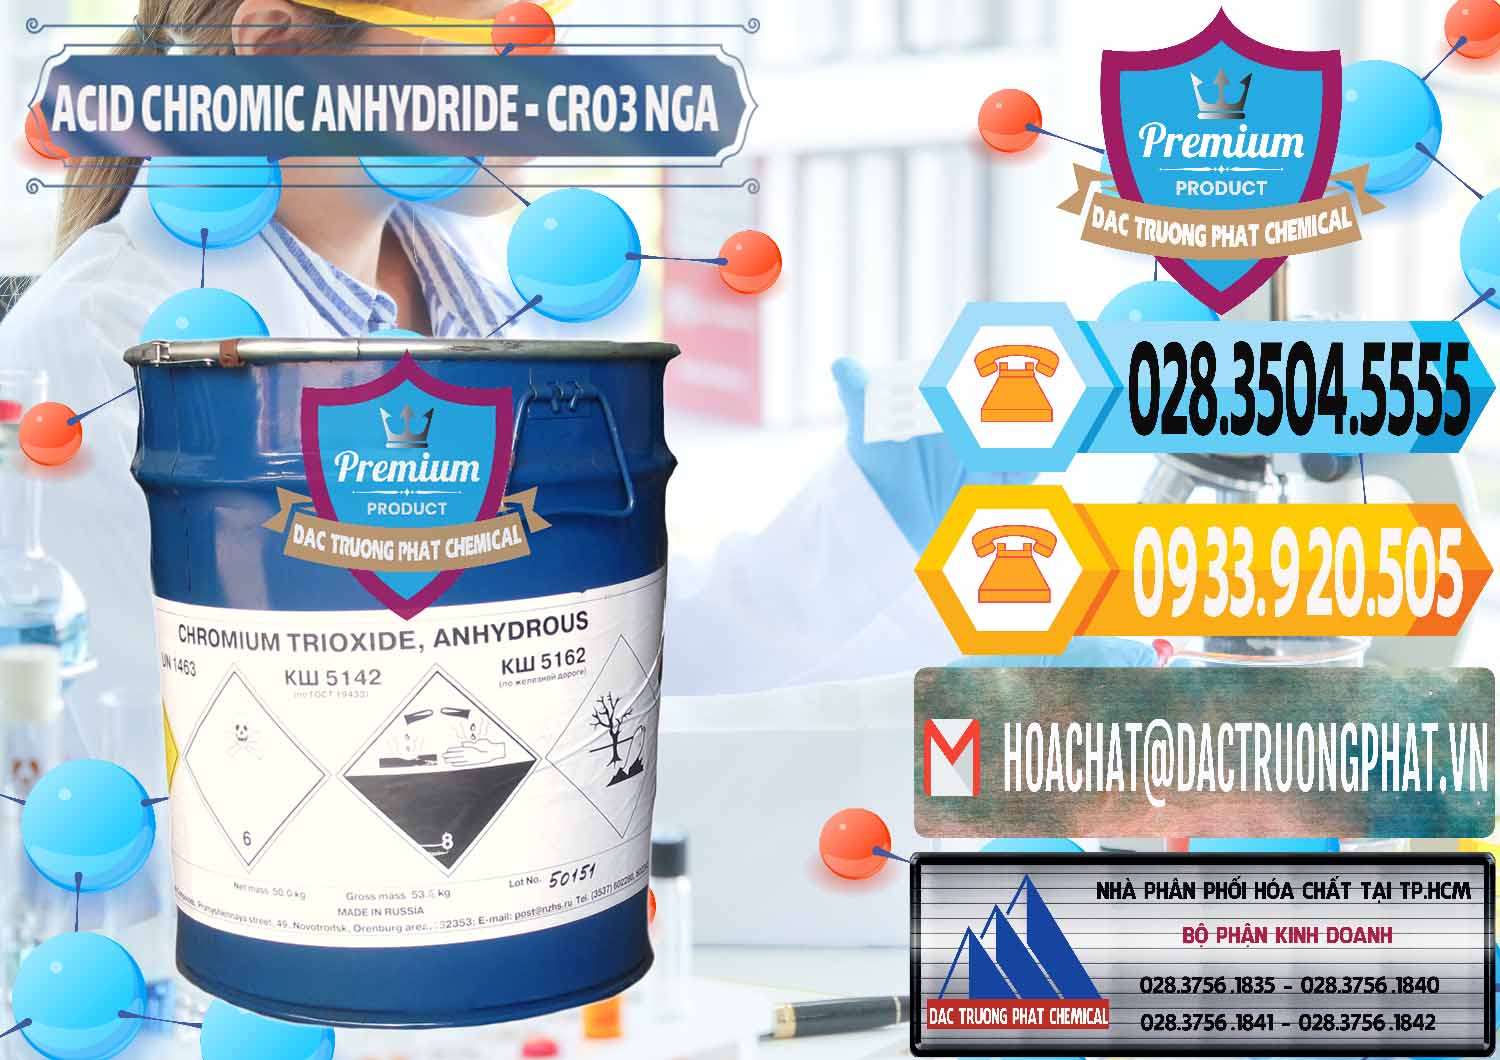 Chuyên bán _ cung ứng Acid Chromic Anhydride - Cromic CRO3 Nga Russia - 0006 - Công ty chuyên cung cấp ( nhập khẩu ) hóa chất tại TP.HCM - hoachattayrua.net